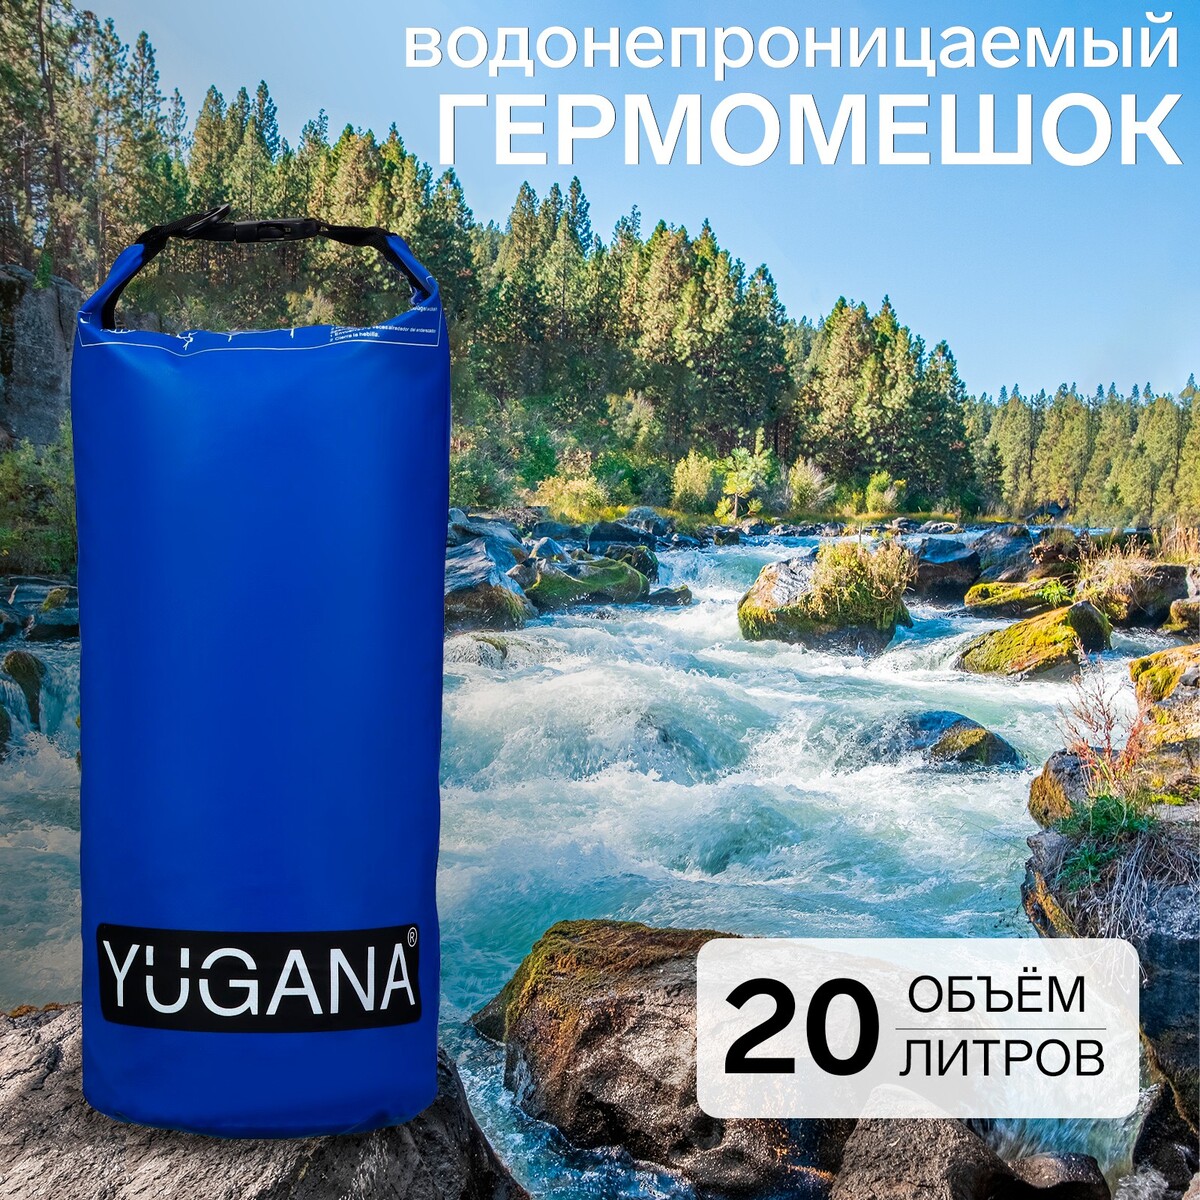 Гермомешок yugana, пвх, водонепроницаемый 20 литров, один ремень, синий гермомешок yugana пвх водонепроницаемый 20 литров один ремень синий